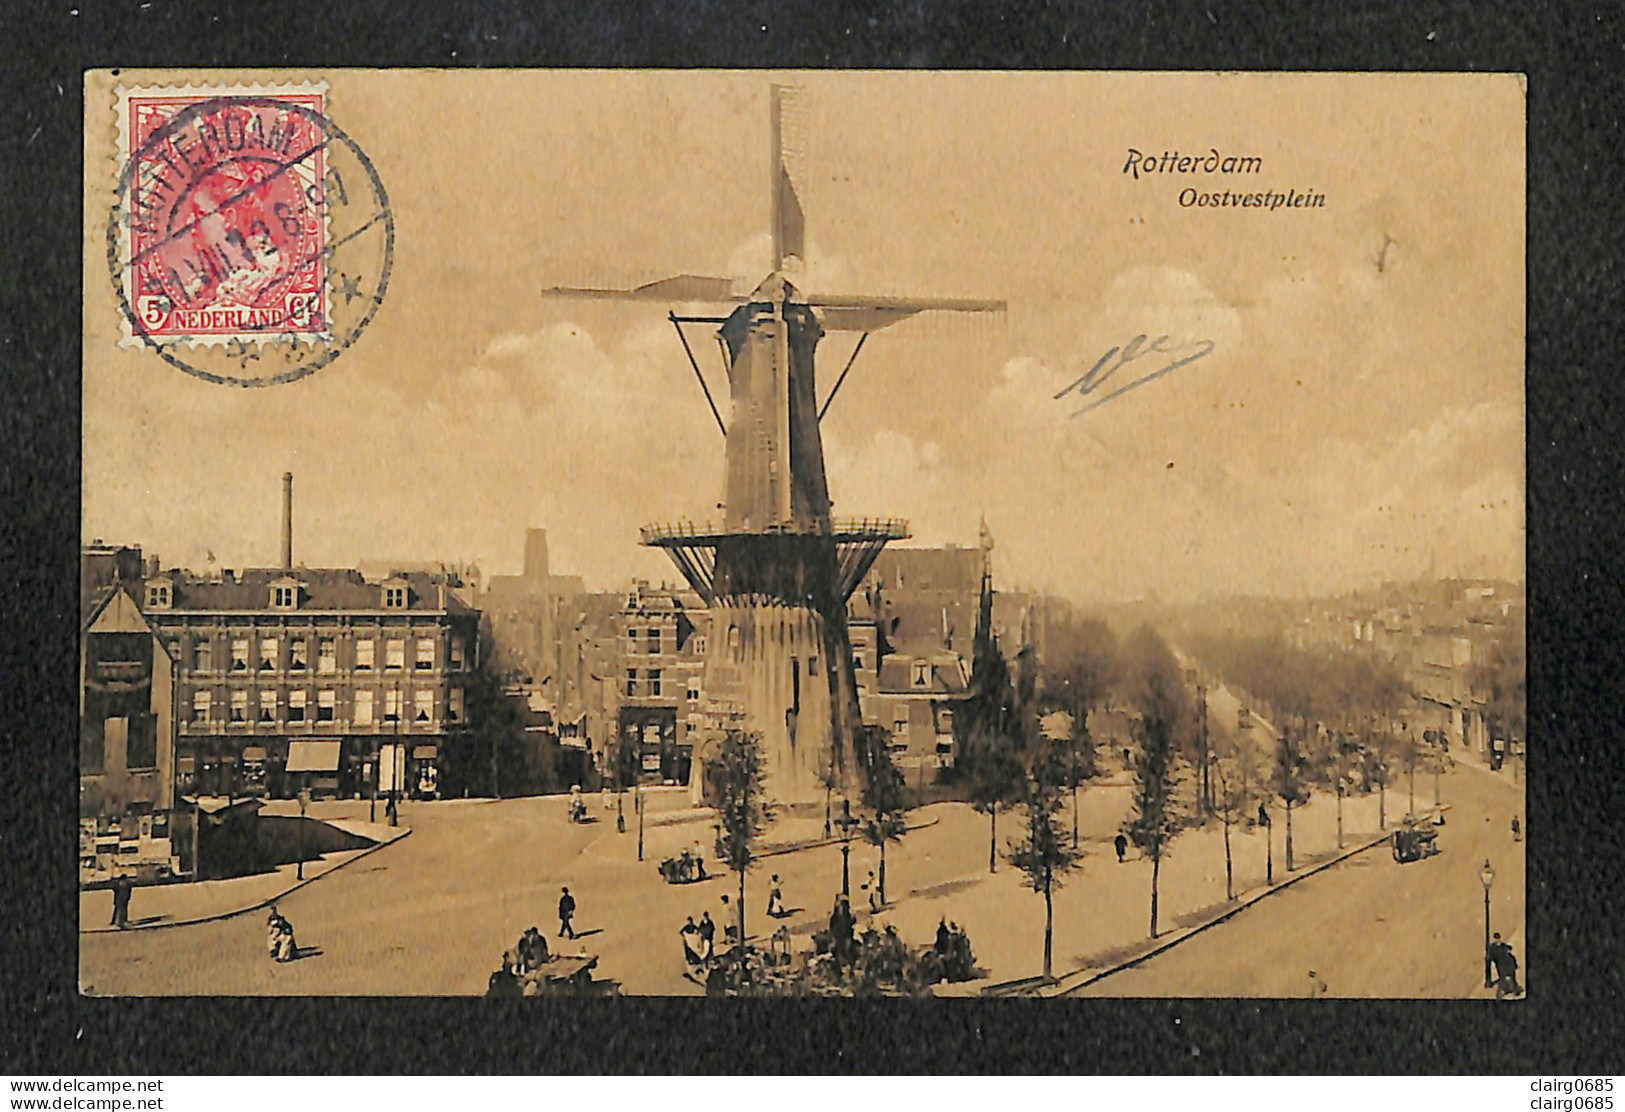 PAYS-BAS - ROTTERDAM - Oostvestplein - 1912 - Rotterdam